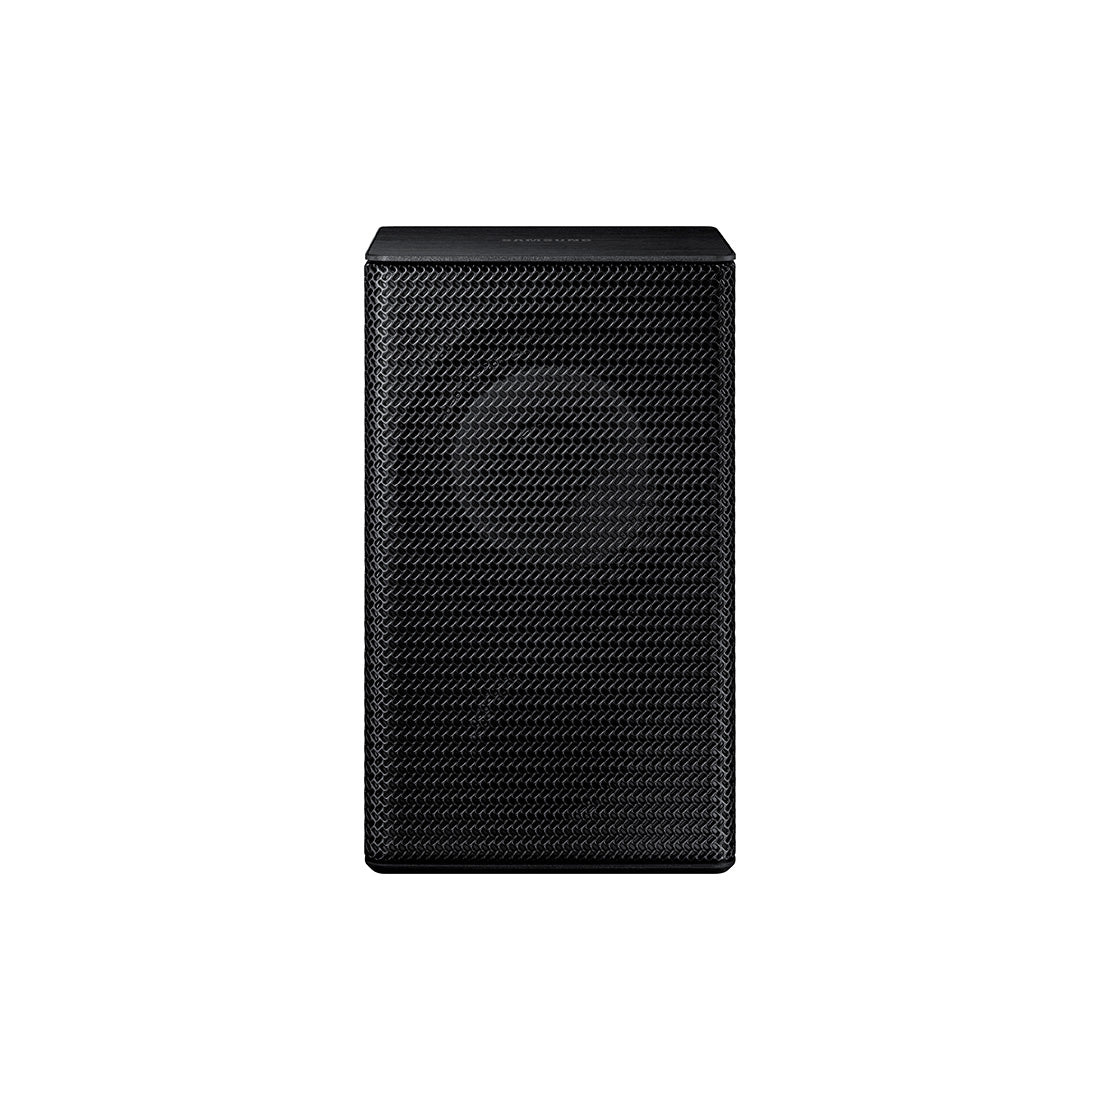 Samsung HW-Q910D/ZC Soundbar